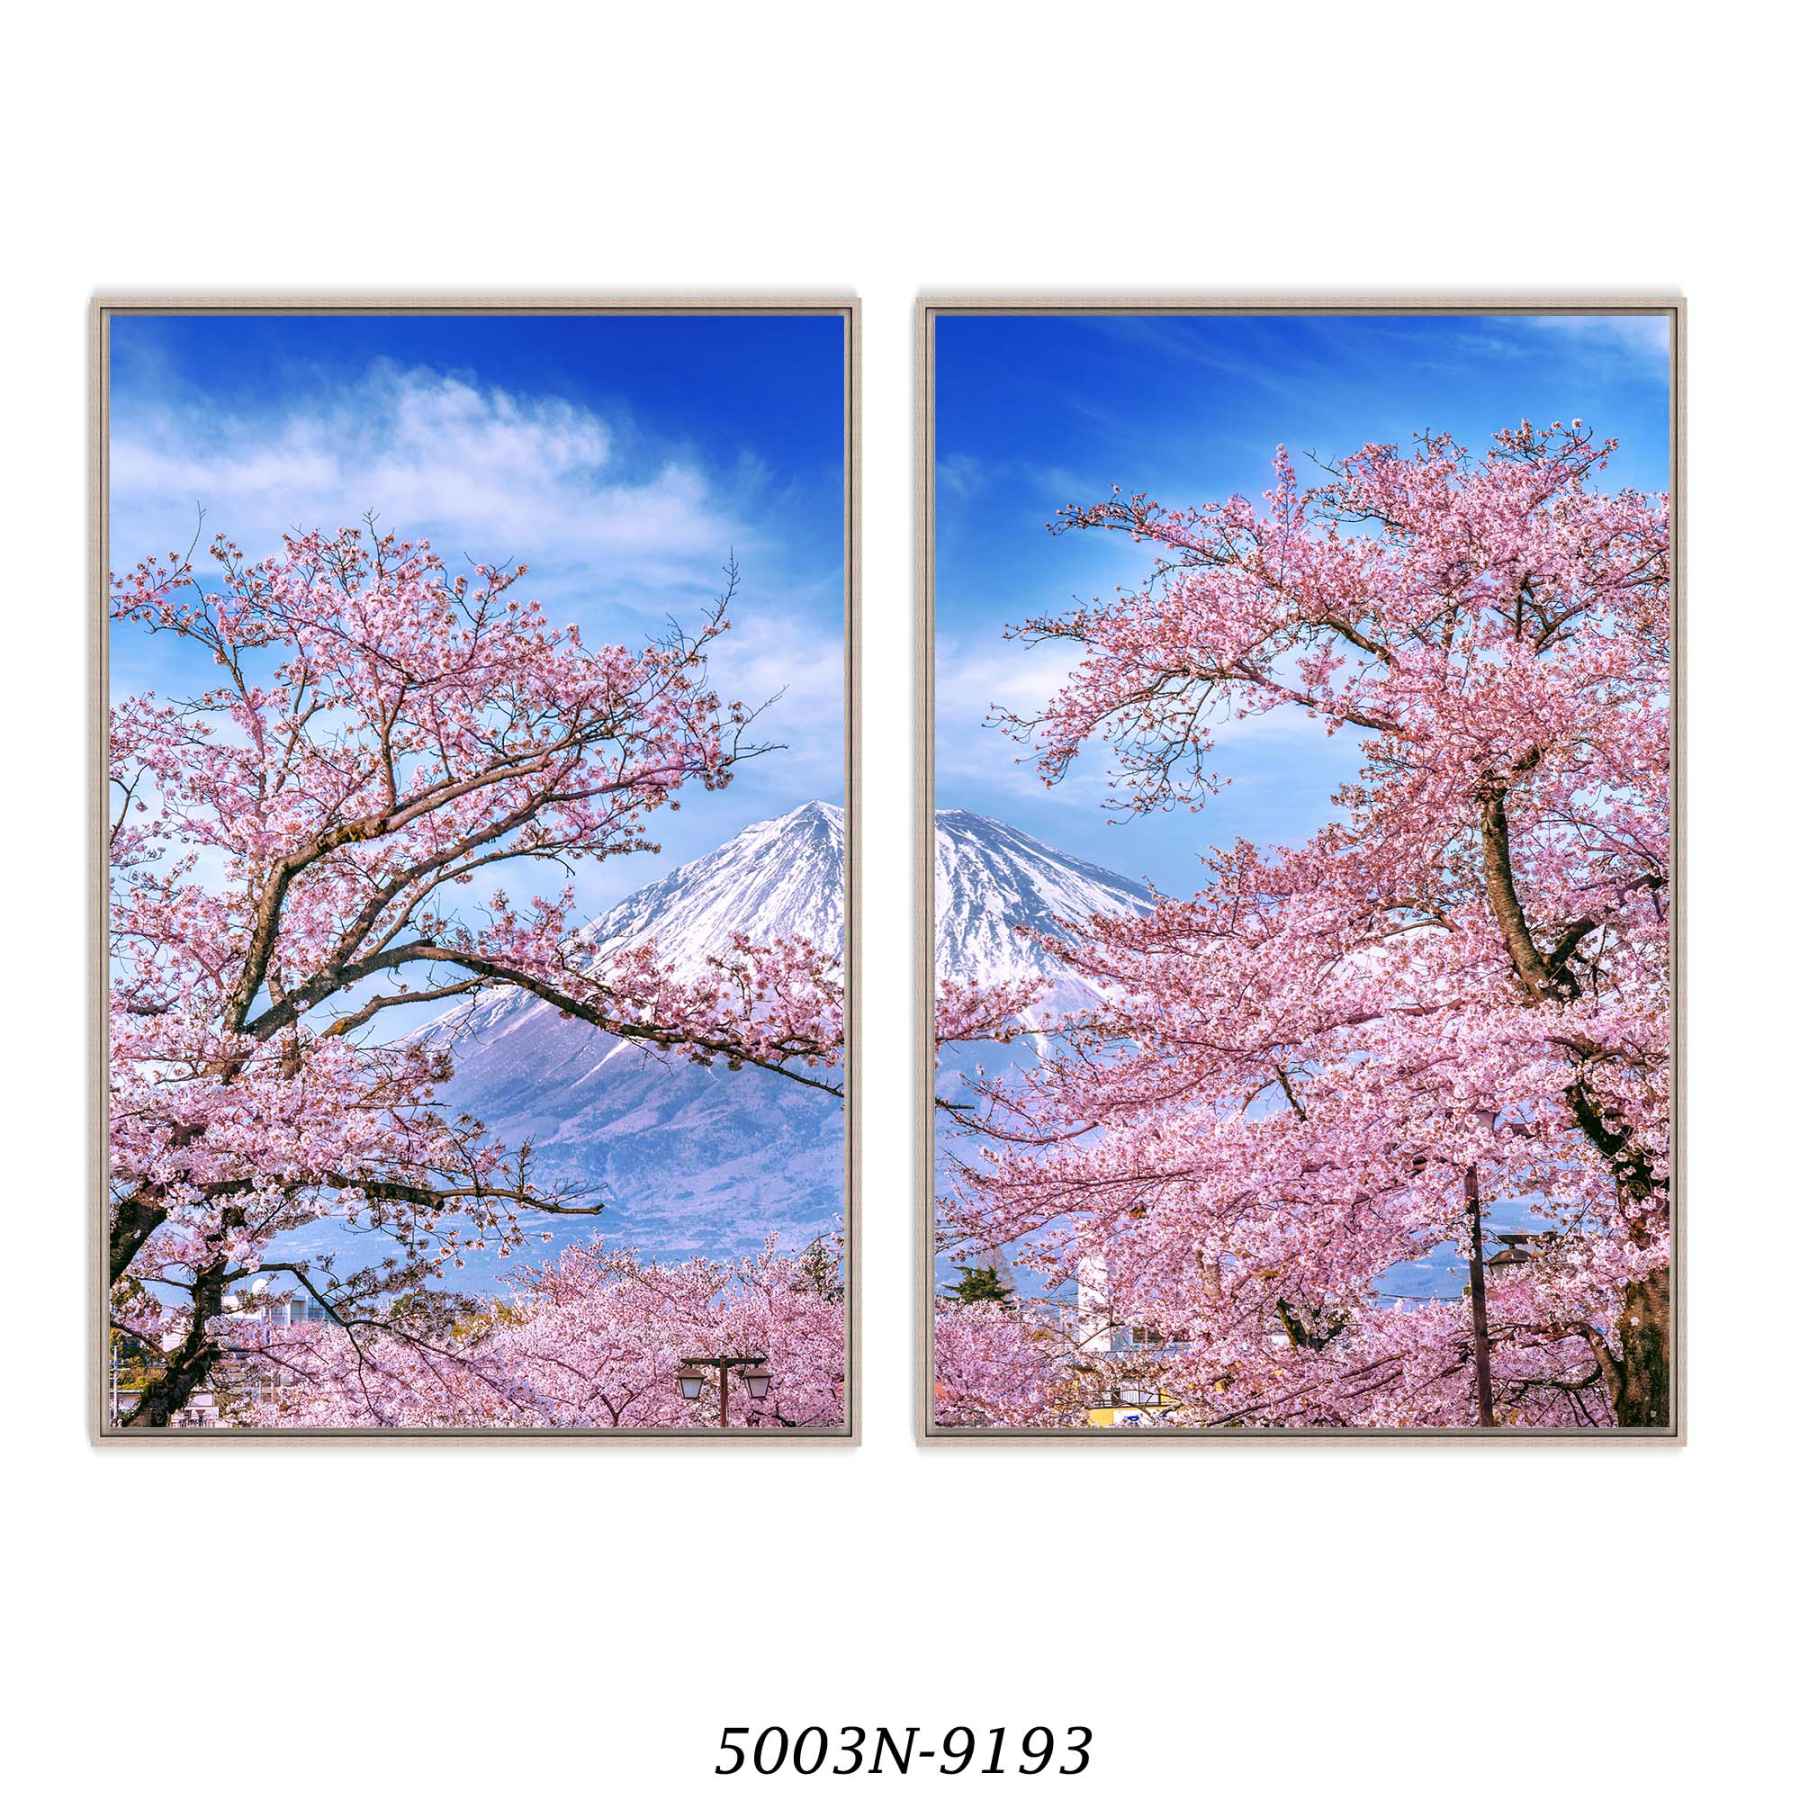 Composição com 2 Quadros Decorativos Flor de Cerejeira e Monte Fuji no Japão